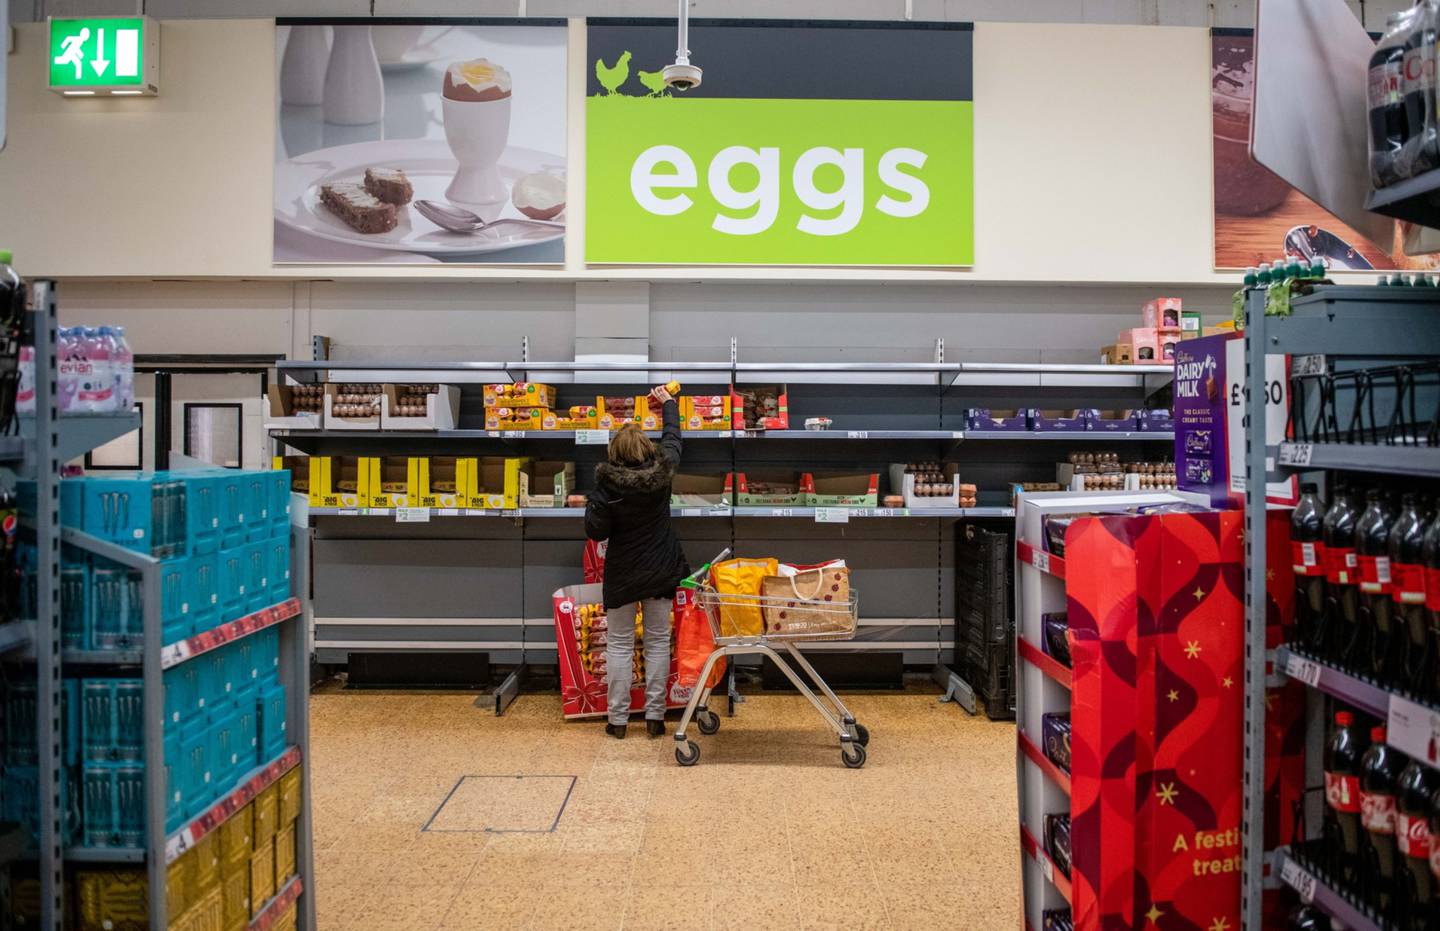 Aunque la presión sobre el precio de los huevos crudos ha hecho hueco a la alternativa vegana, el producto natural sigue con mejor relación coste-beneficio.dfd